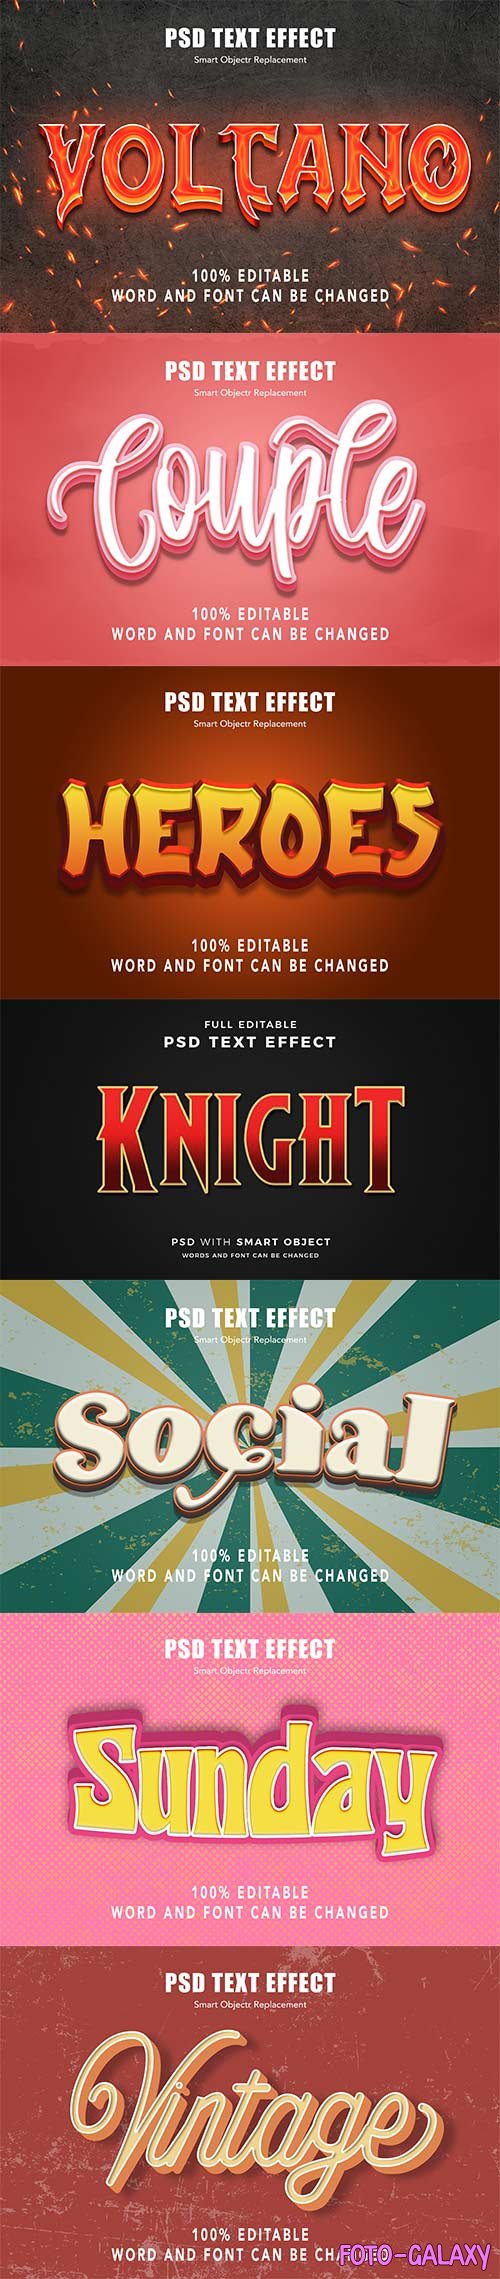 Psd text effect set vol 39